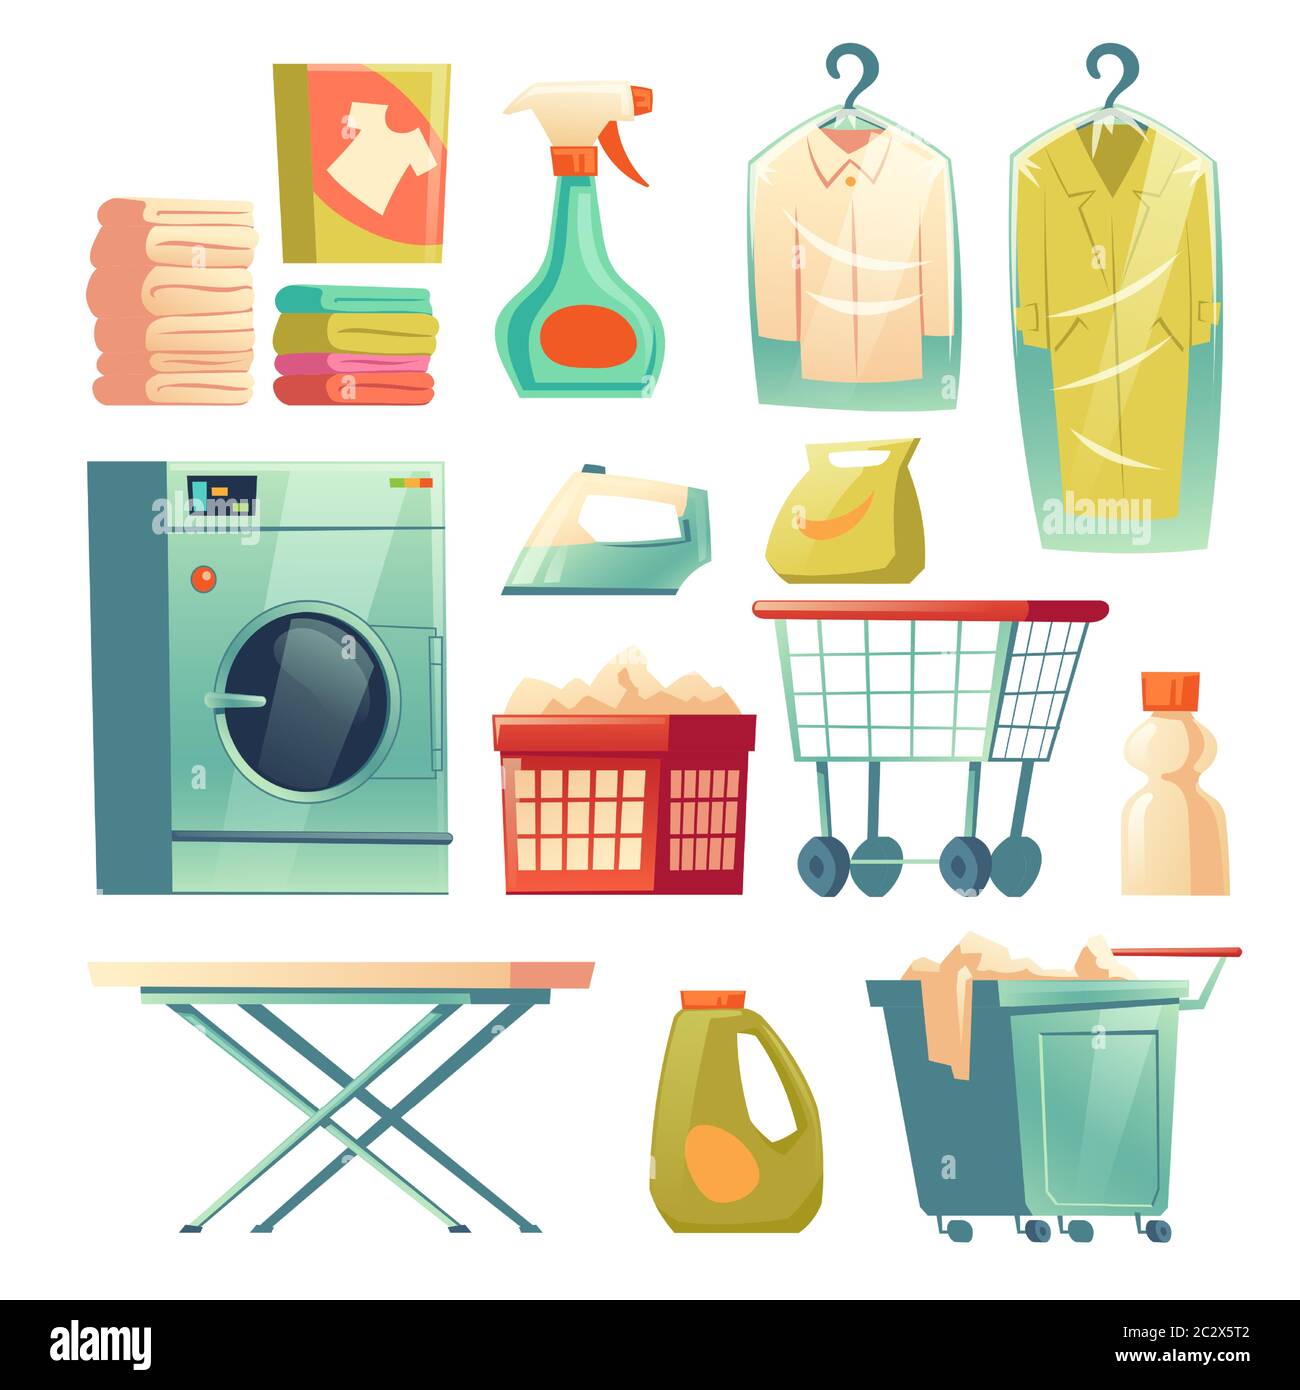 Chemische Reinigung. Wäschereieinrichtungen auf weißem Hintergrund  isoliert. Vektor Cartoon Satz von Waschmaschine, Bügeleisen und Bügelbrett,  Waschmittel, Wagen Stock-Vektorgrafik - Alamy